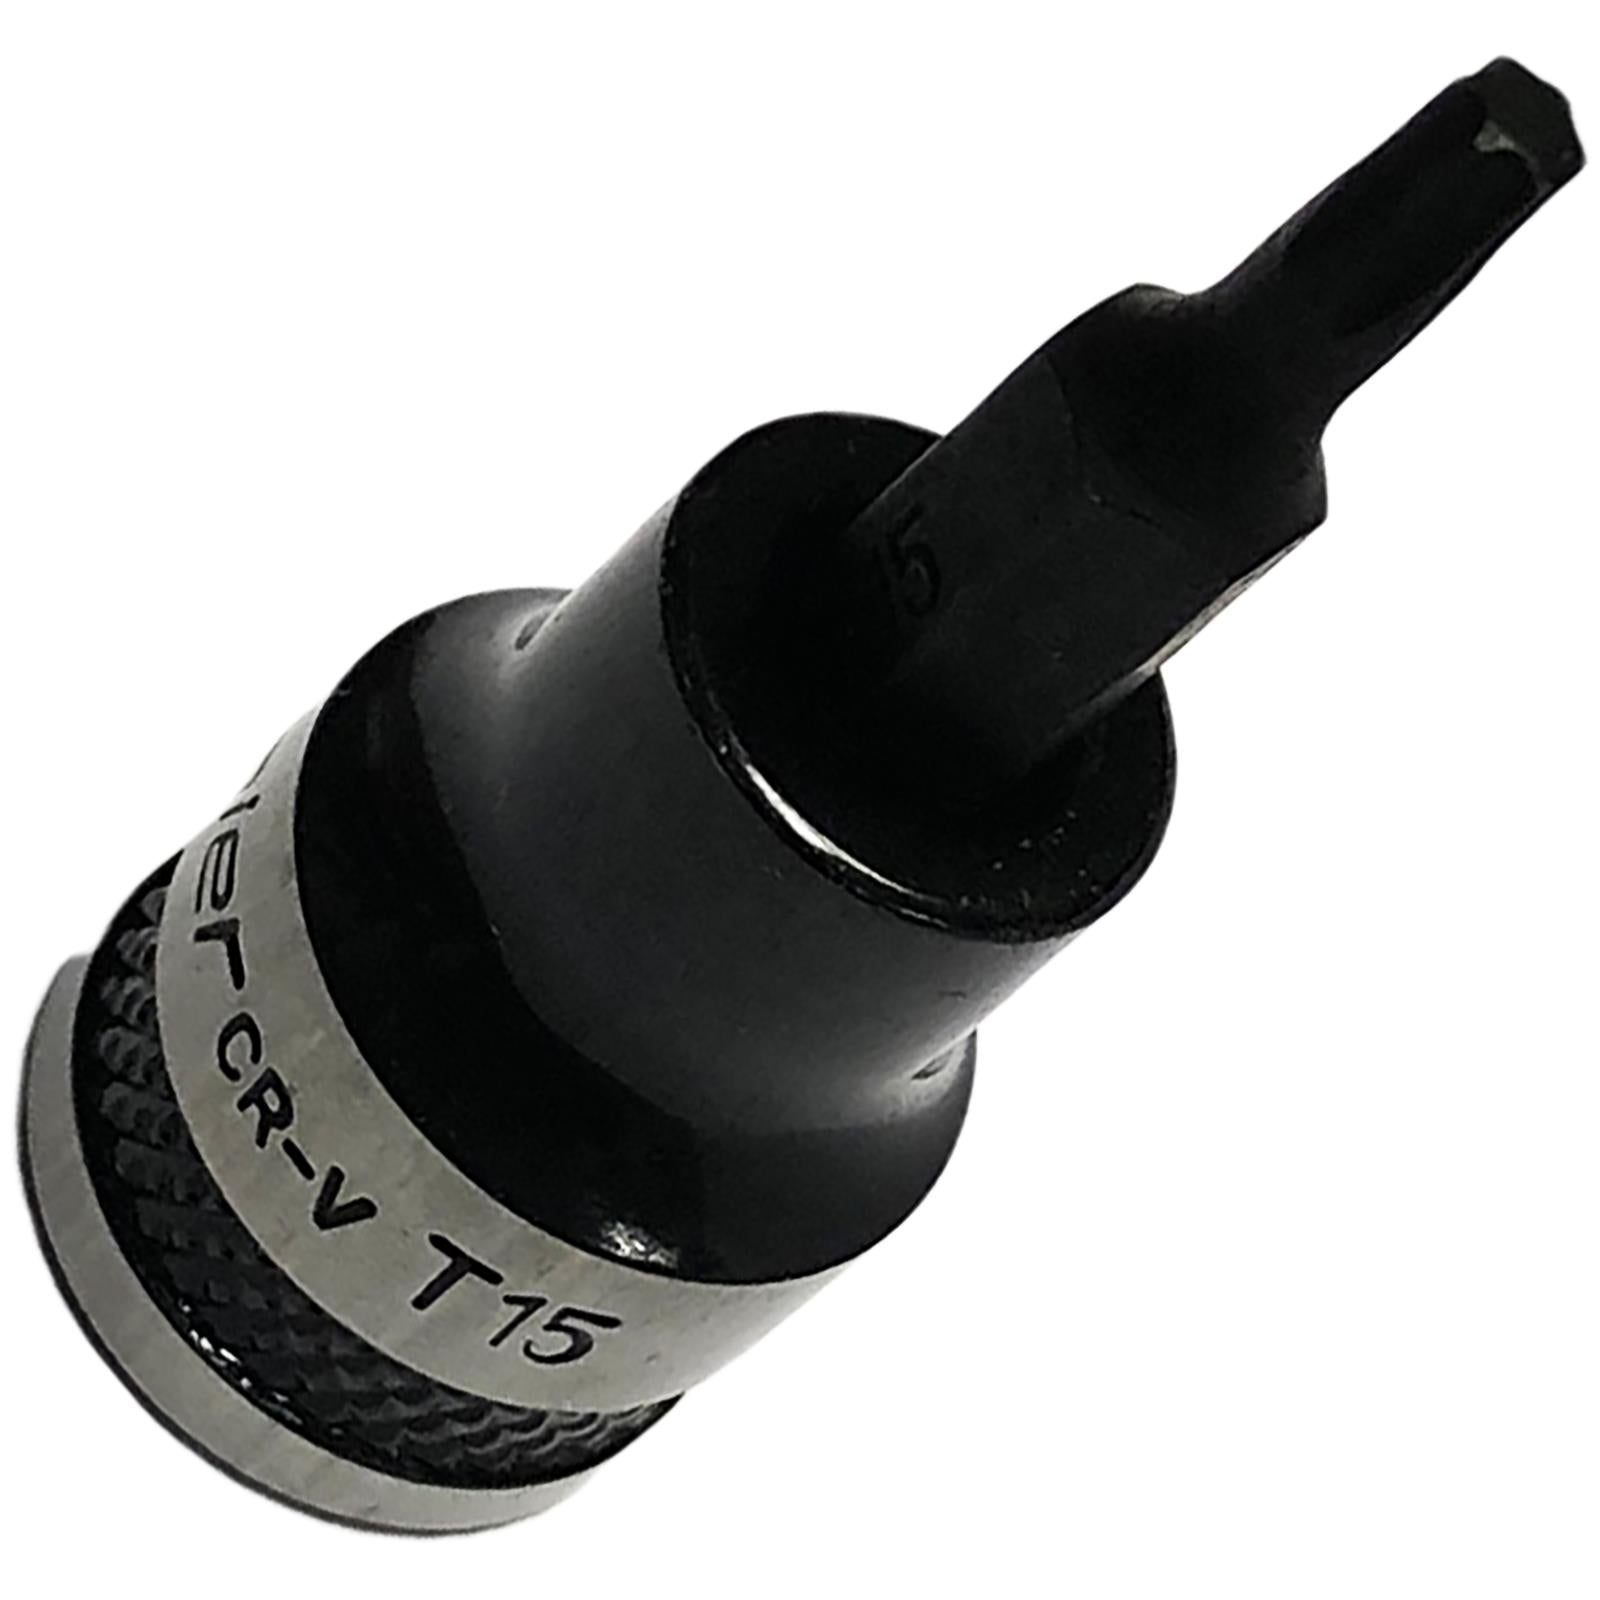 Sealey Trx-Star Socket Bit 3/8" Drive Premier Black T15 Torx